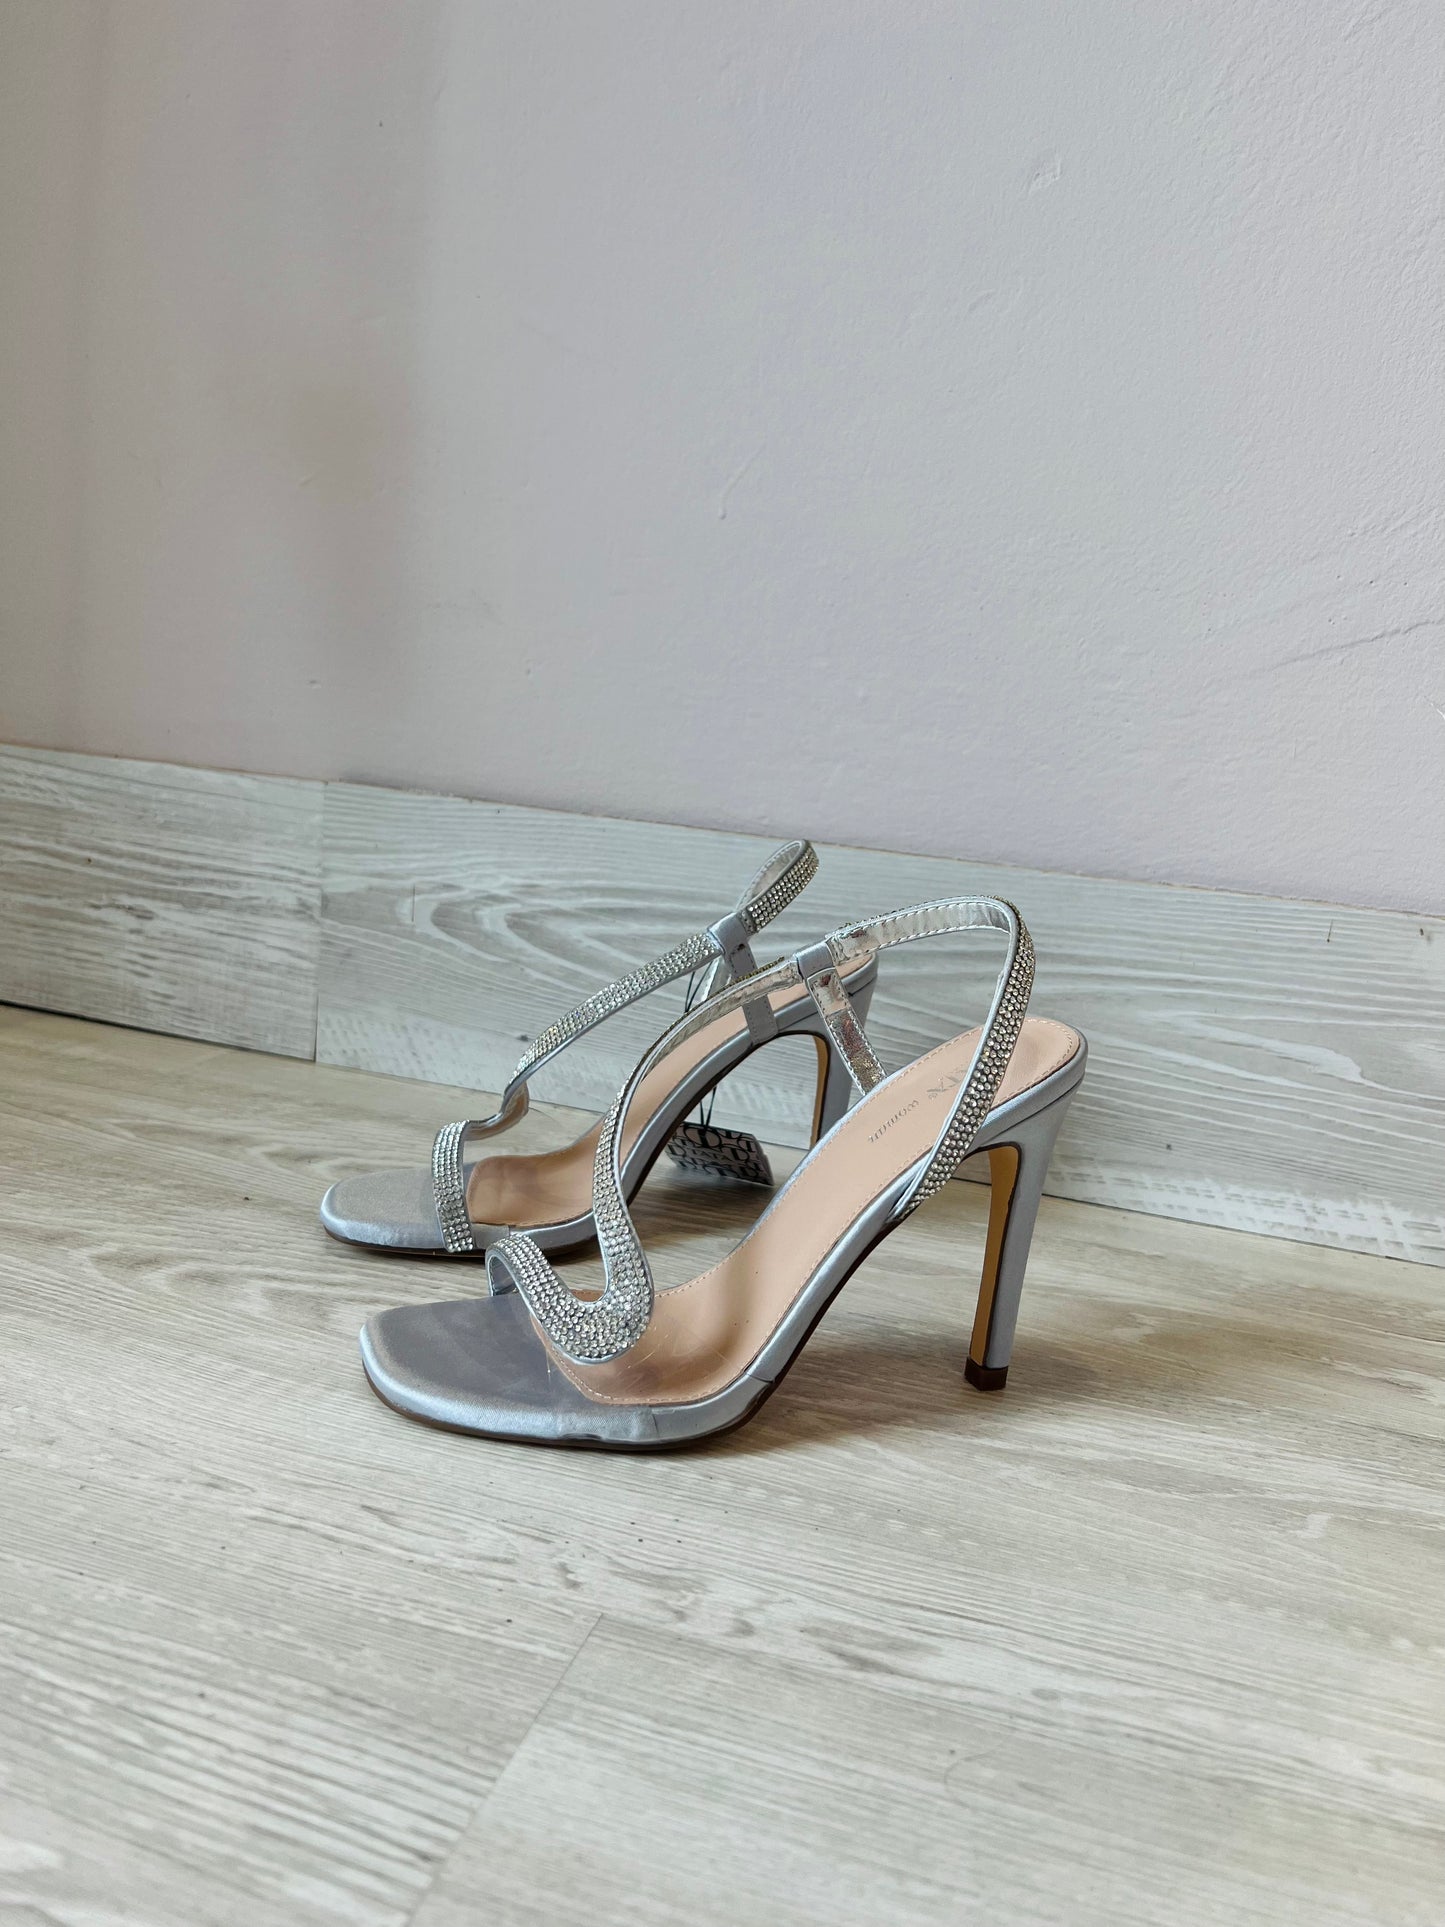 Sandalo con tacco asimmetrico raso argento e strass-DS935